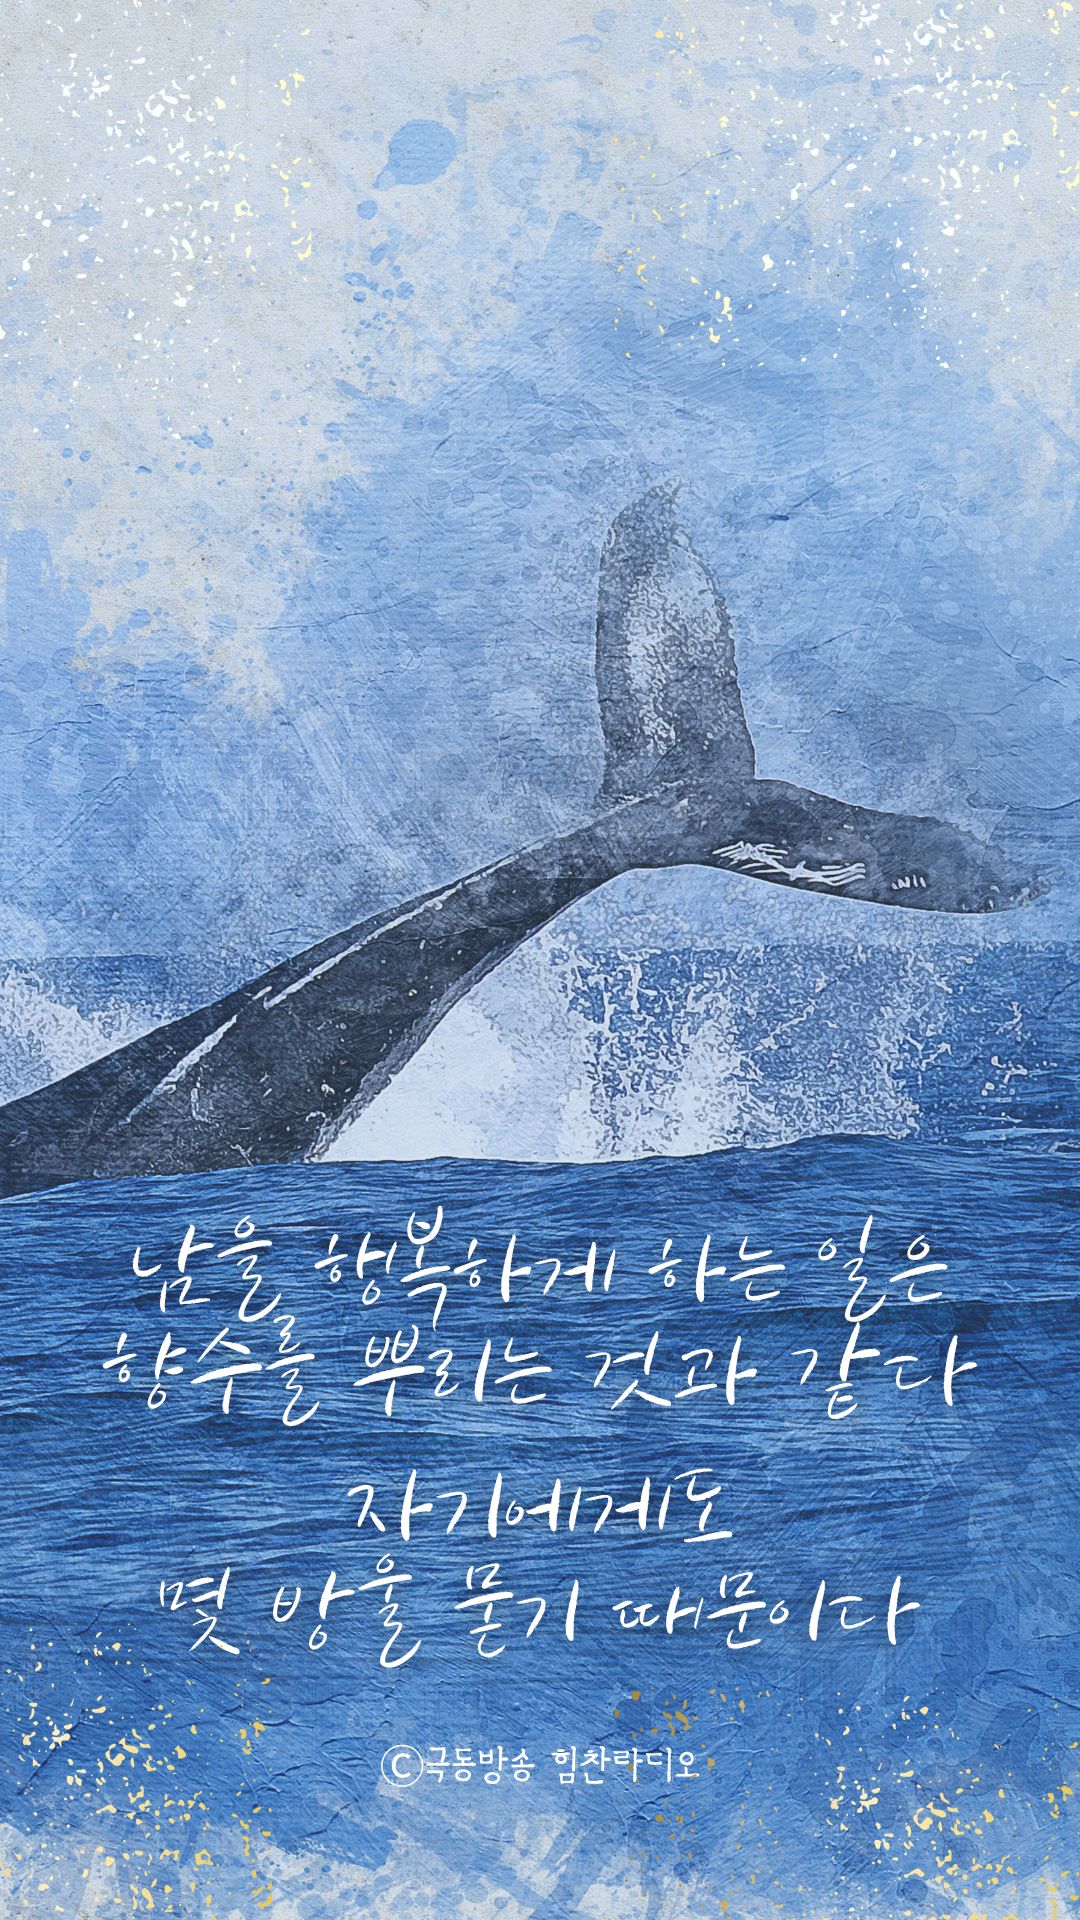 Blue Watercolor Ocean Whale Phone Wallpaper.jpg